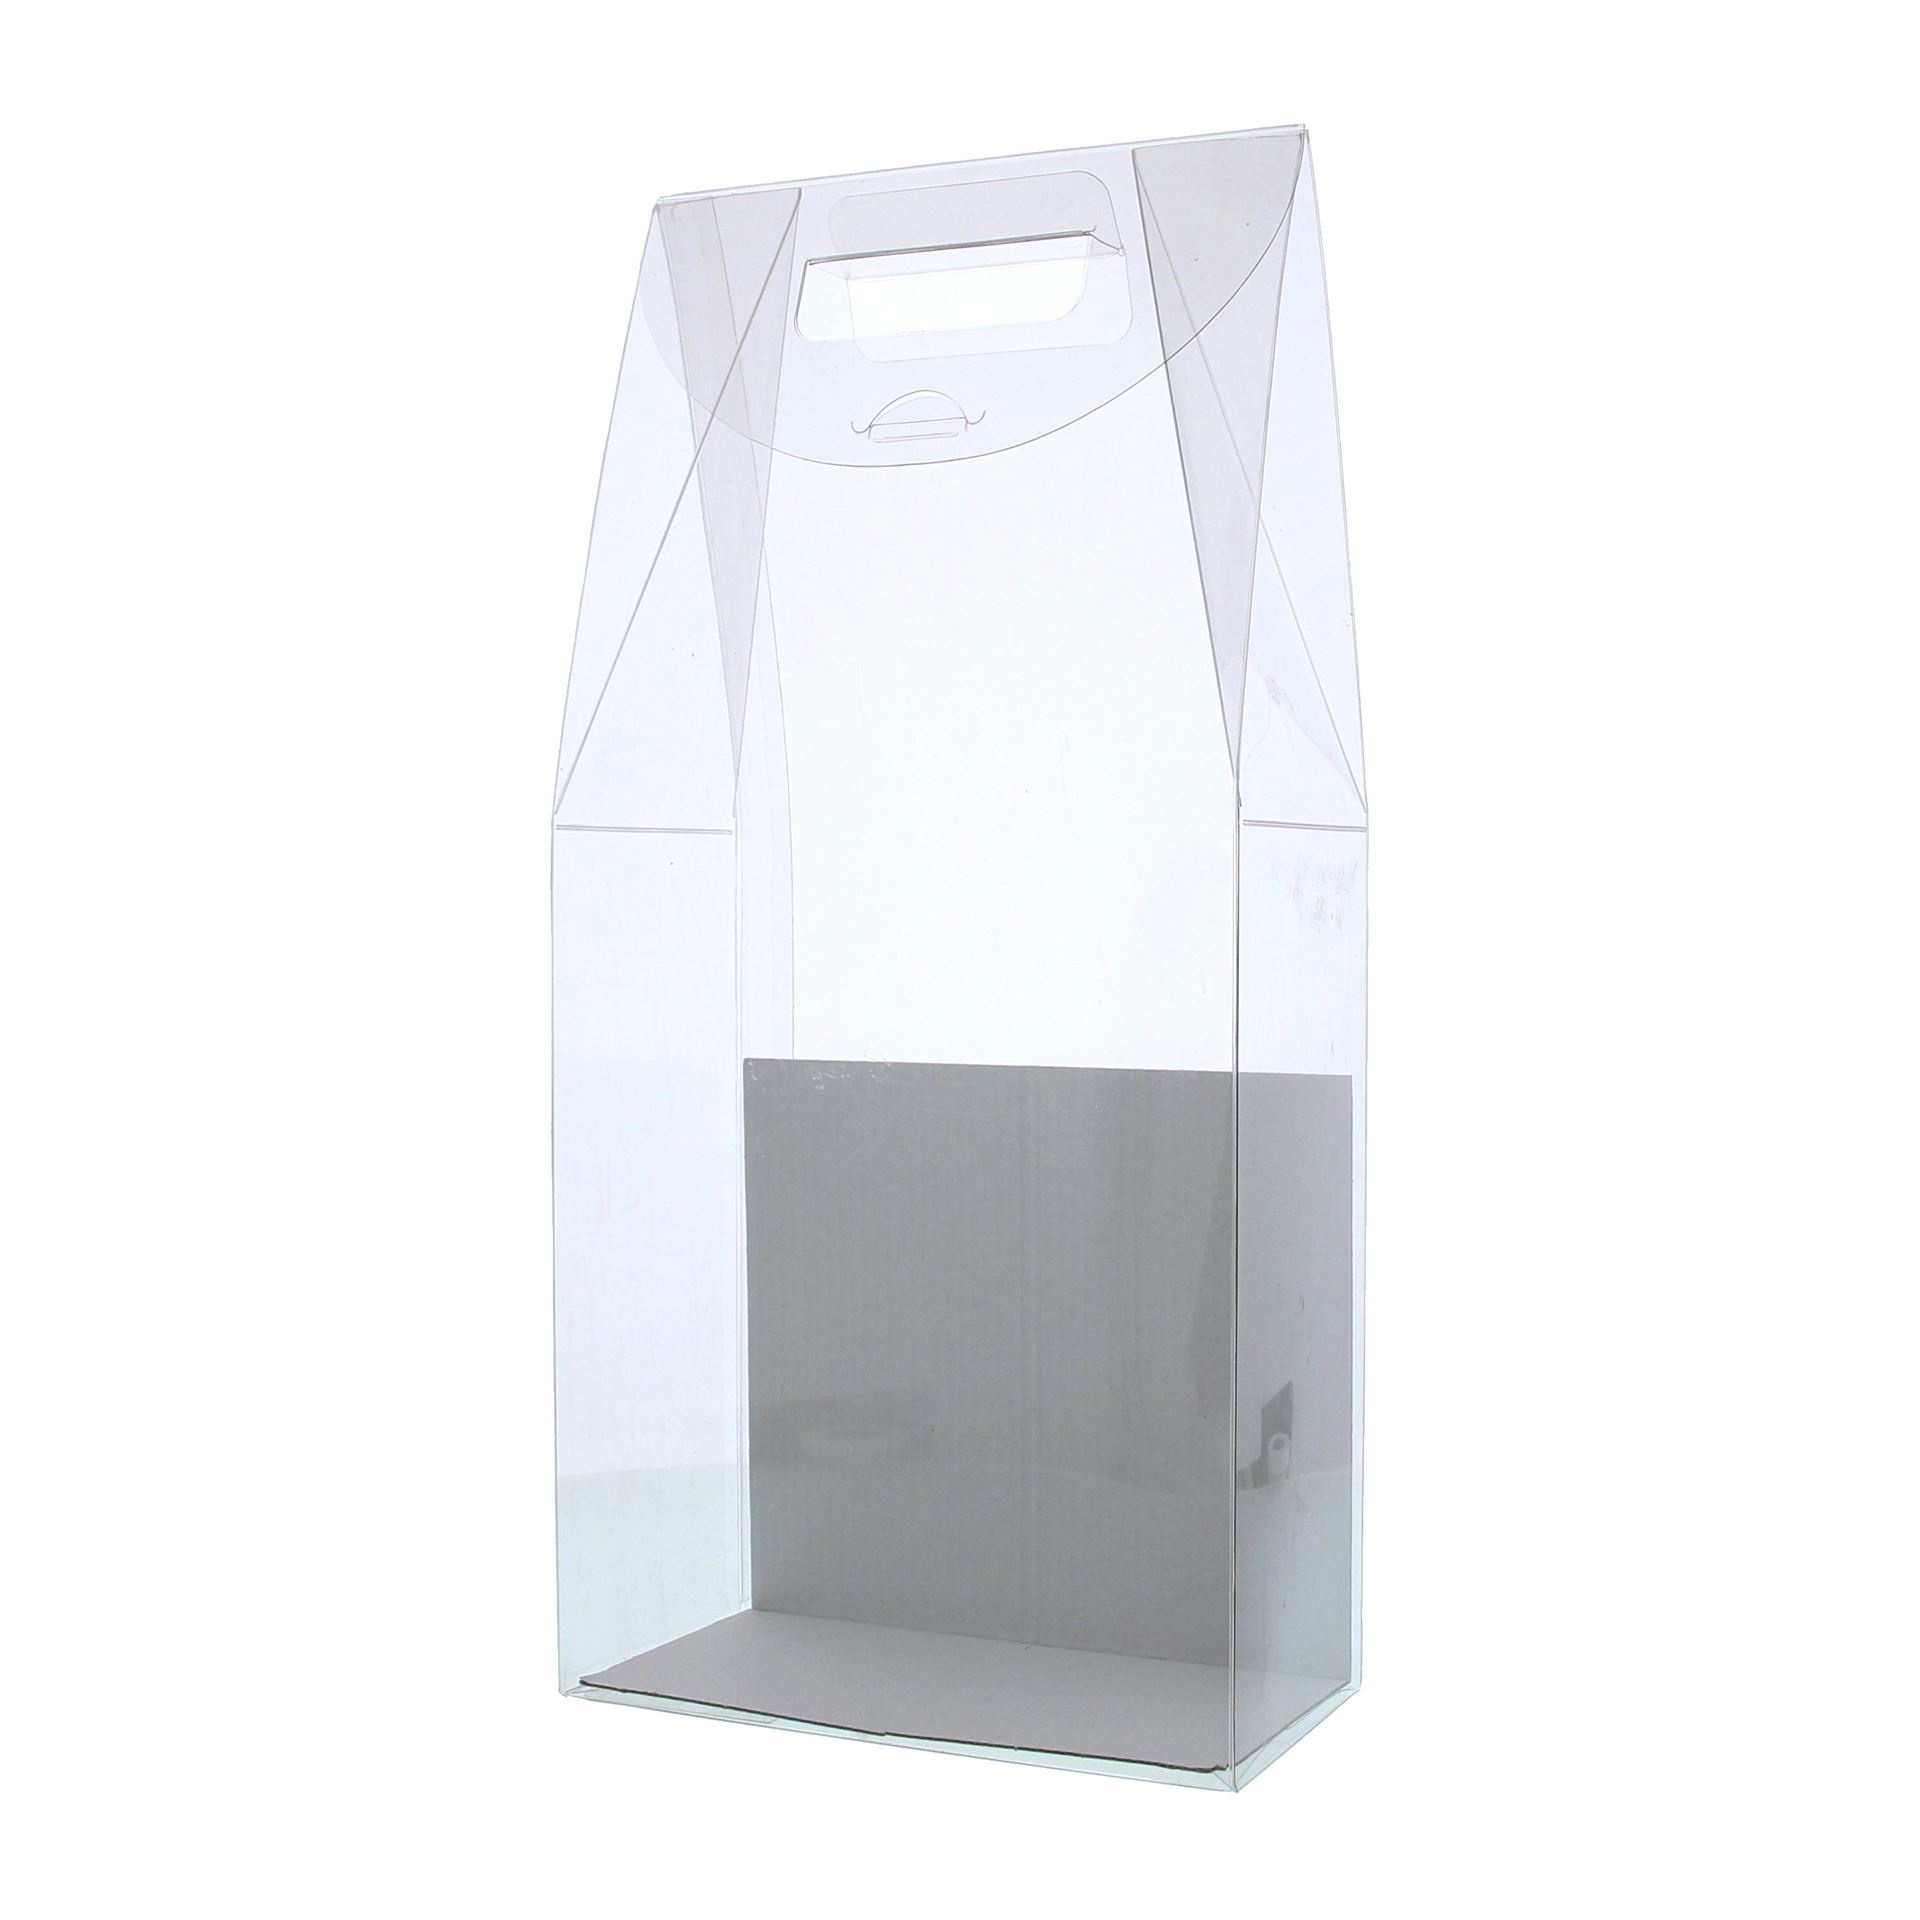 Transparente Verpackung für 2 Flaschen mit weißem Boden- 180* 90*370 mm -10 stuks